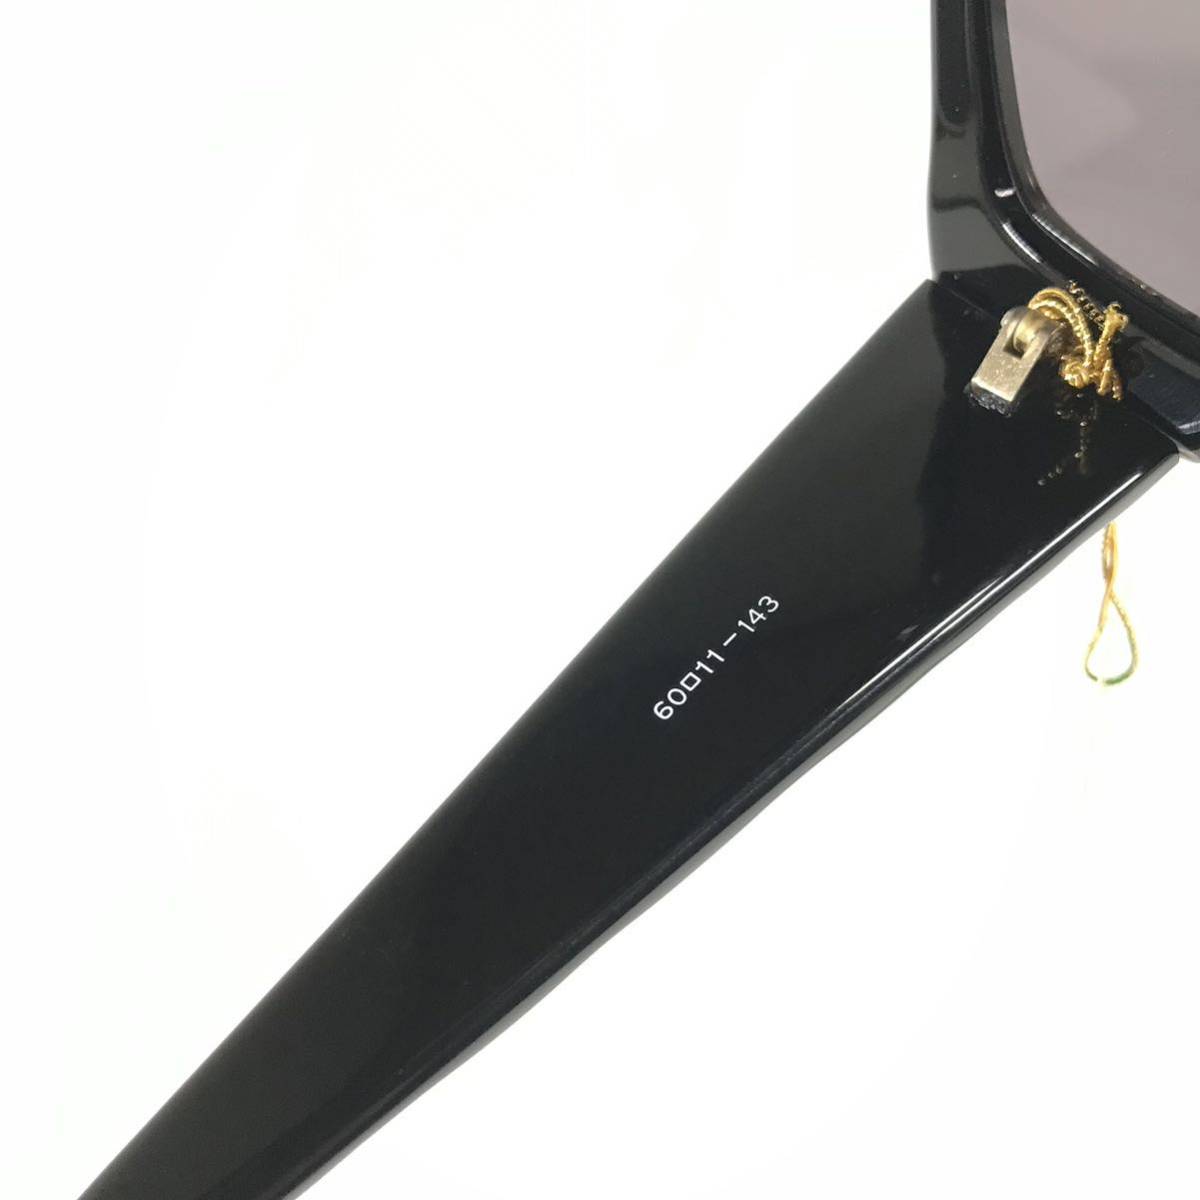  не использовался товар [ Castelbajac ] подлинный товар Castelbajac солнцезащитные очки JC Logo 9003 серый цвет серия × чёрный мужской женский обычная цена 2.8 десять тысяч иен стоимость доставки 520 иен 2